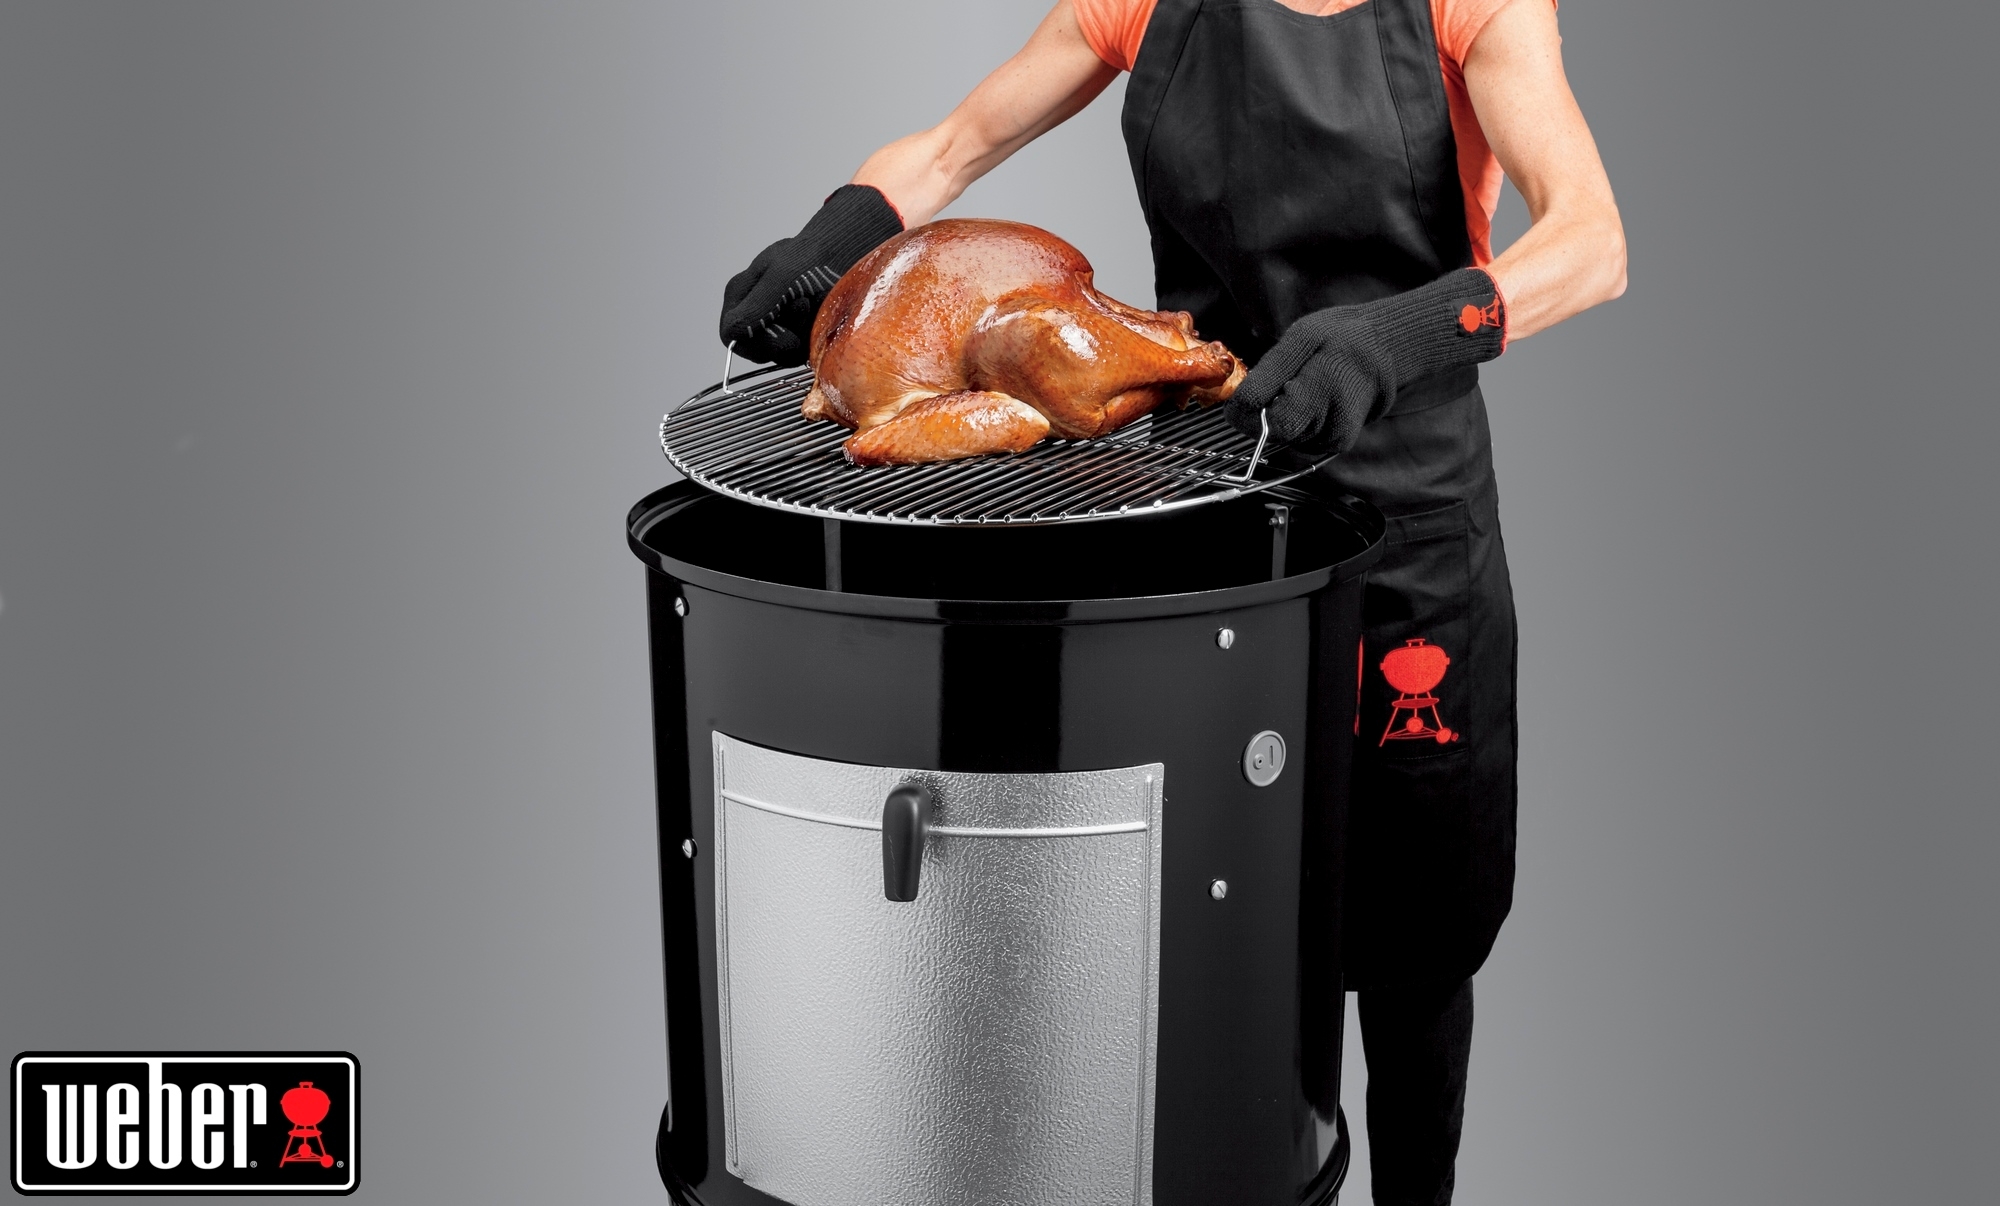 Weber® Smokey Mountain Cooker, 57 cm, Black